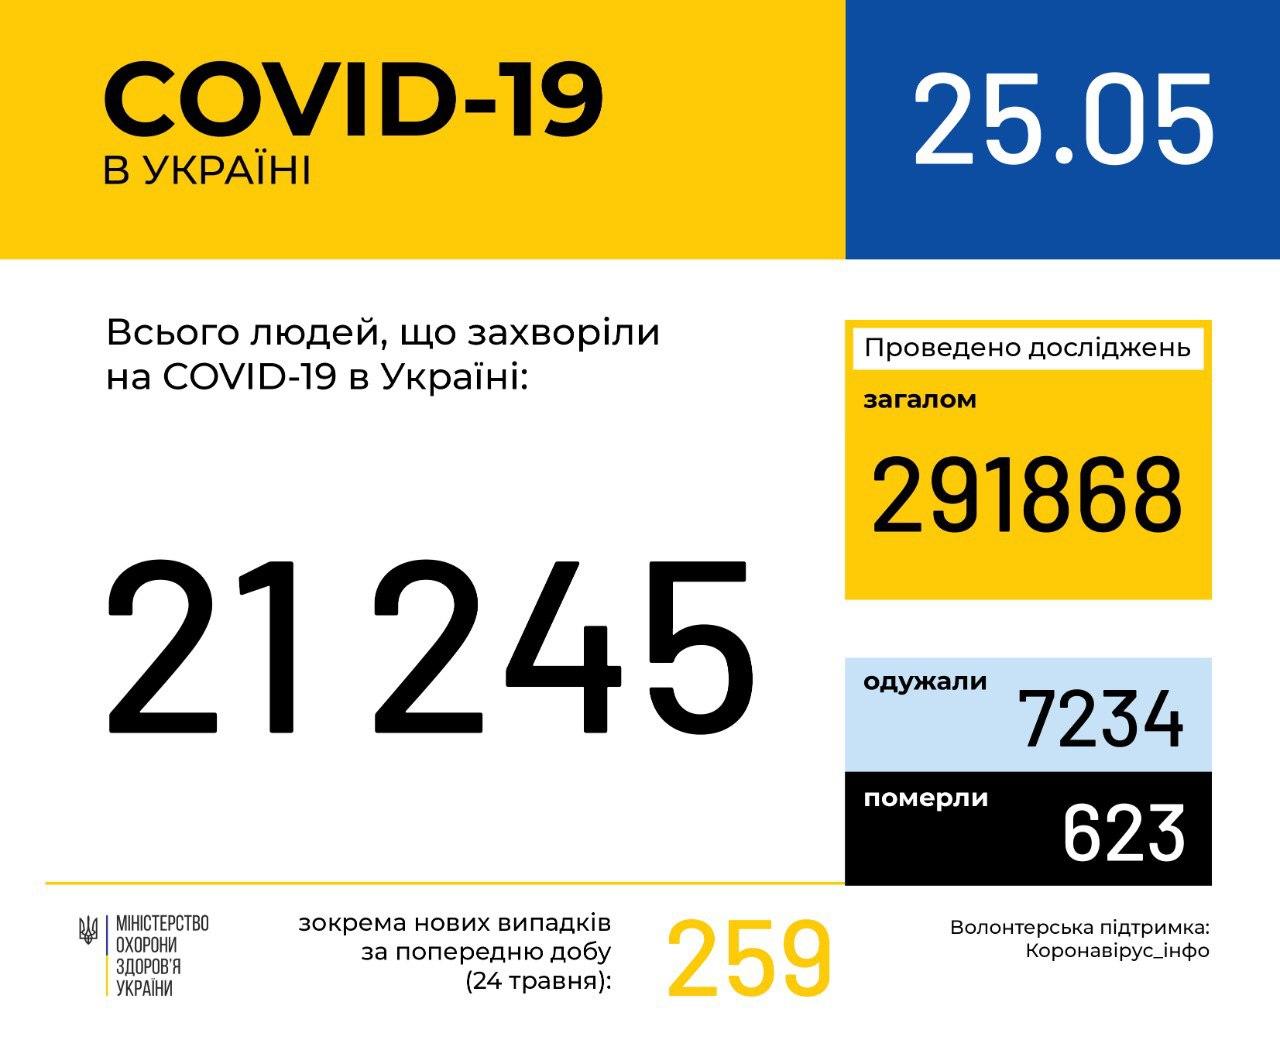 В Україні зафіксовано 21245 випадків коронавірусної хвороби COVID-19, - МОЗ